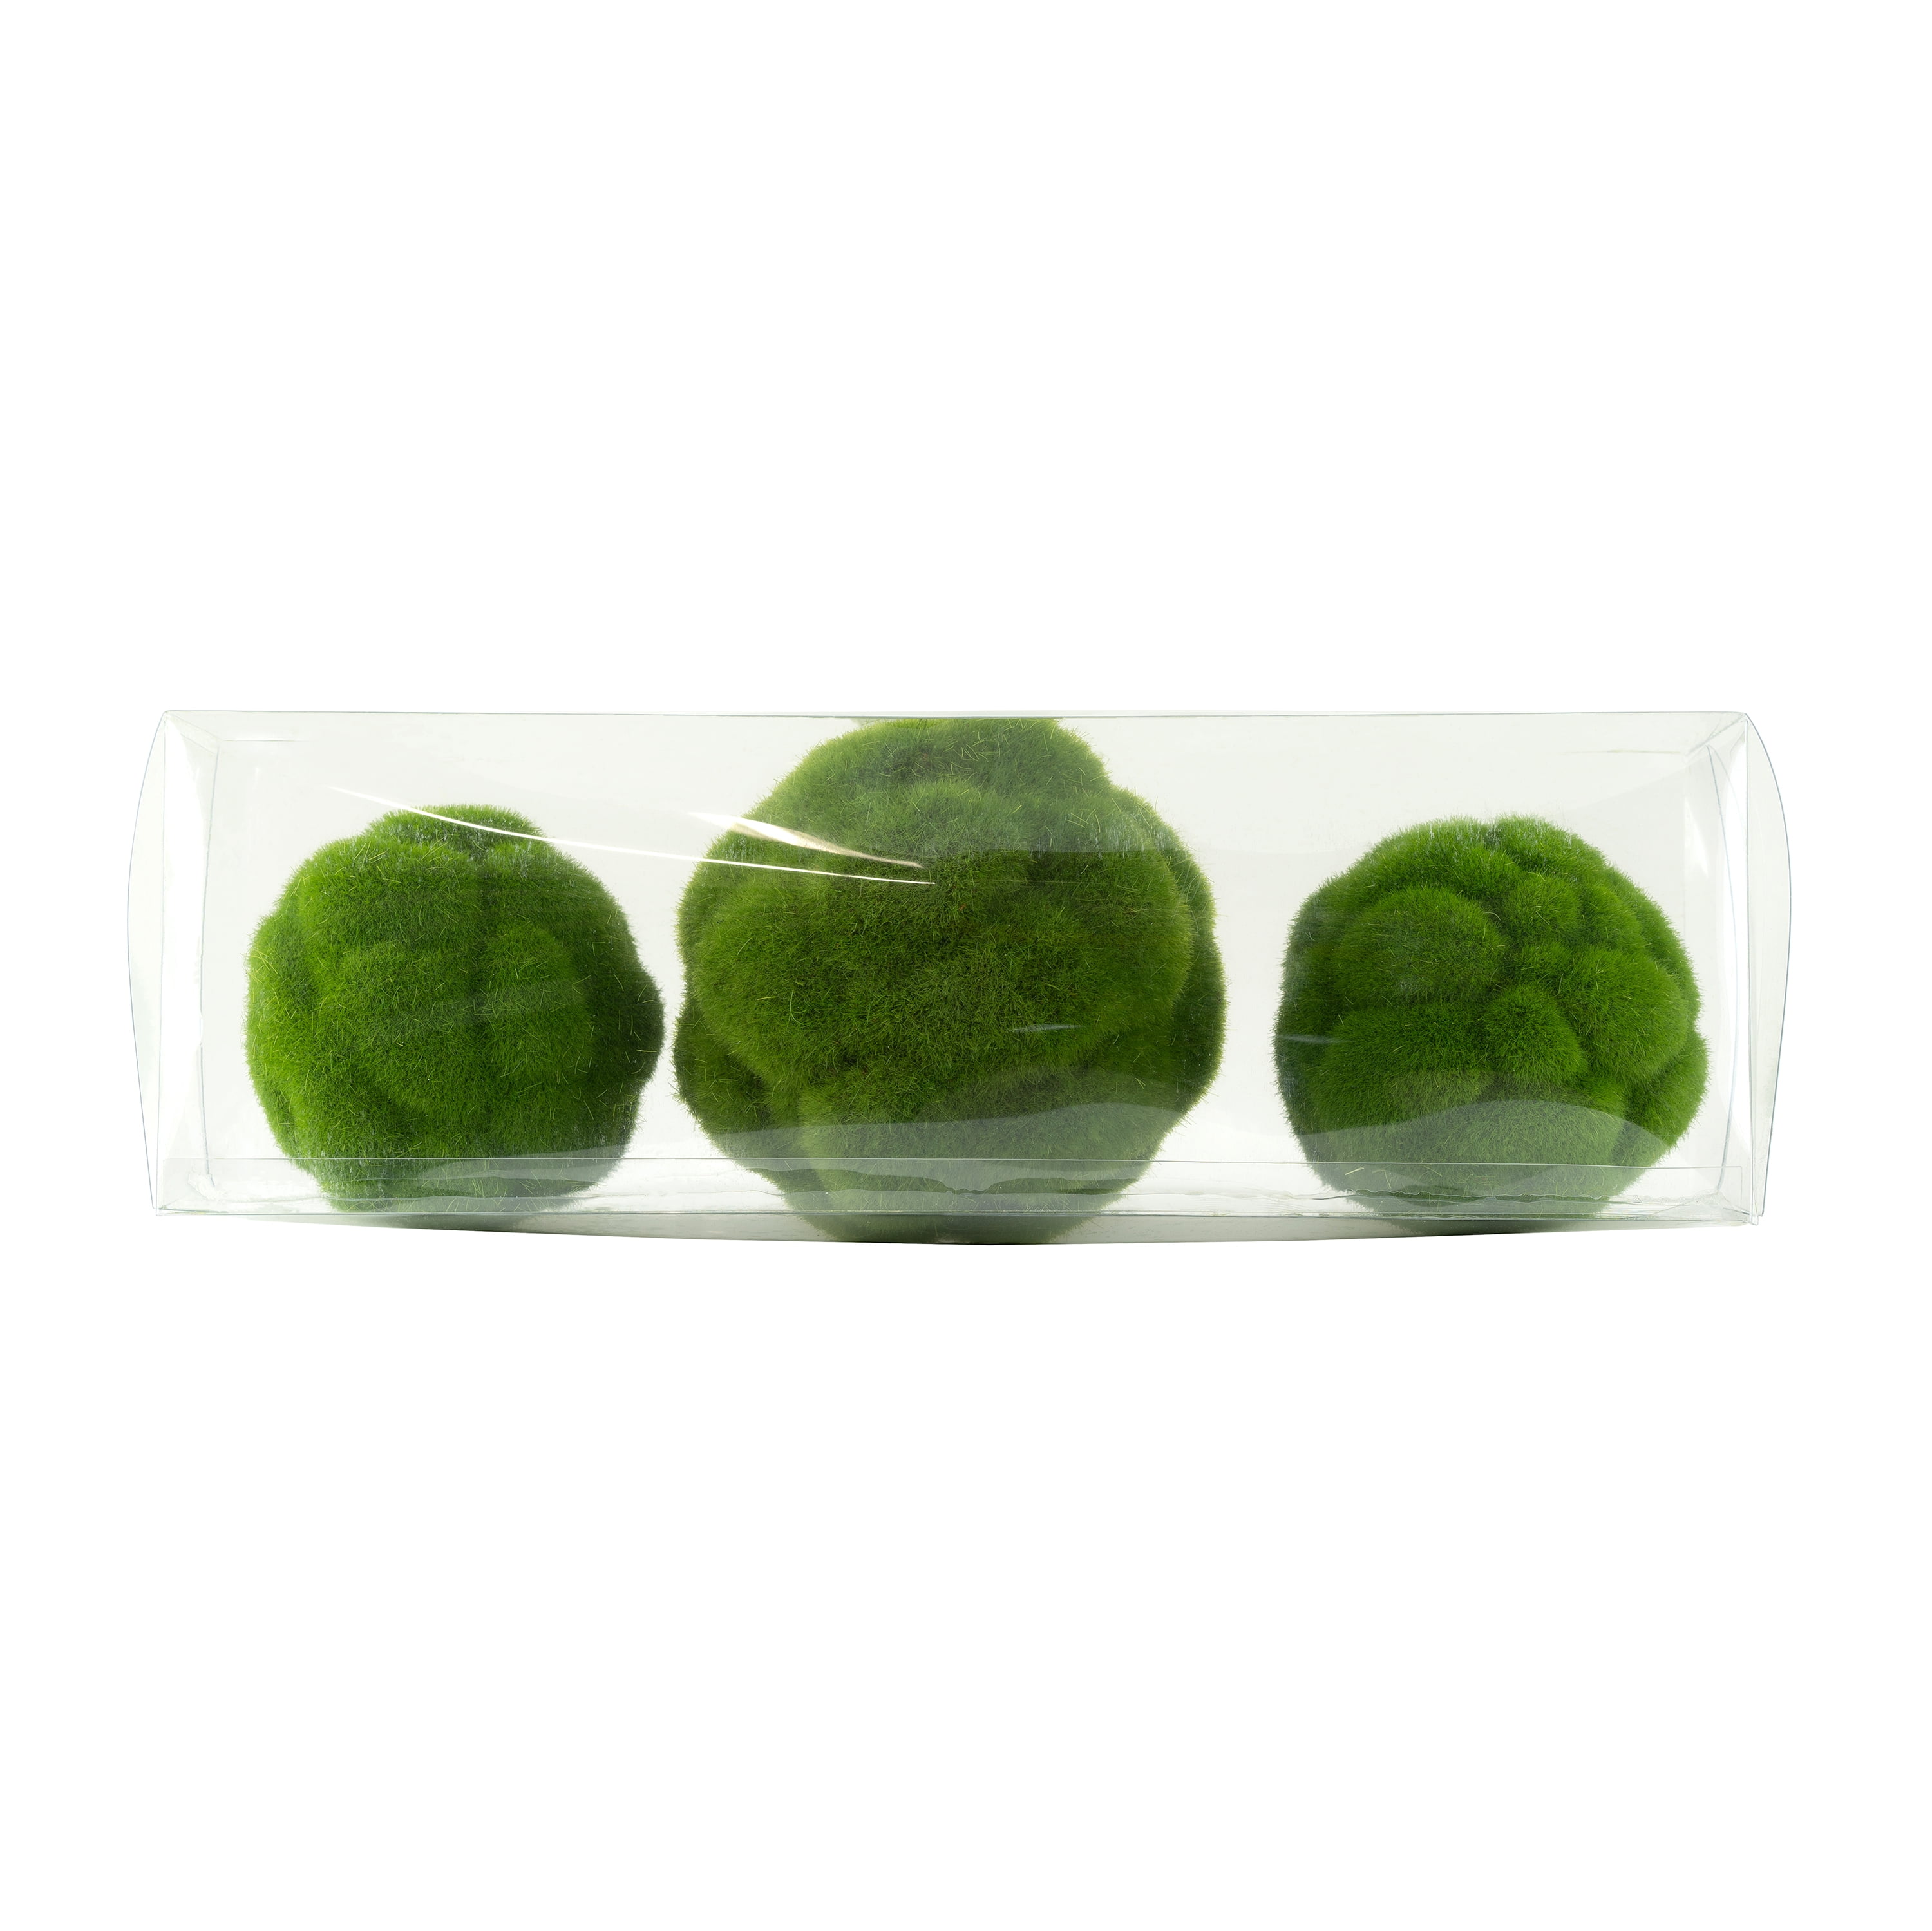 12 Green Moss Ball [KC1103] 